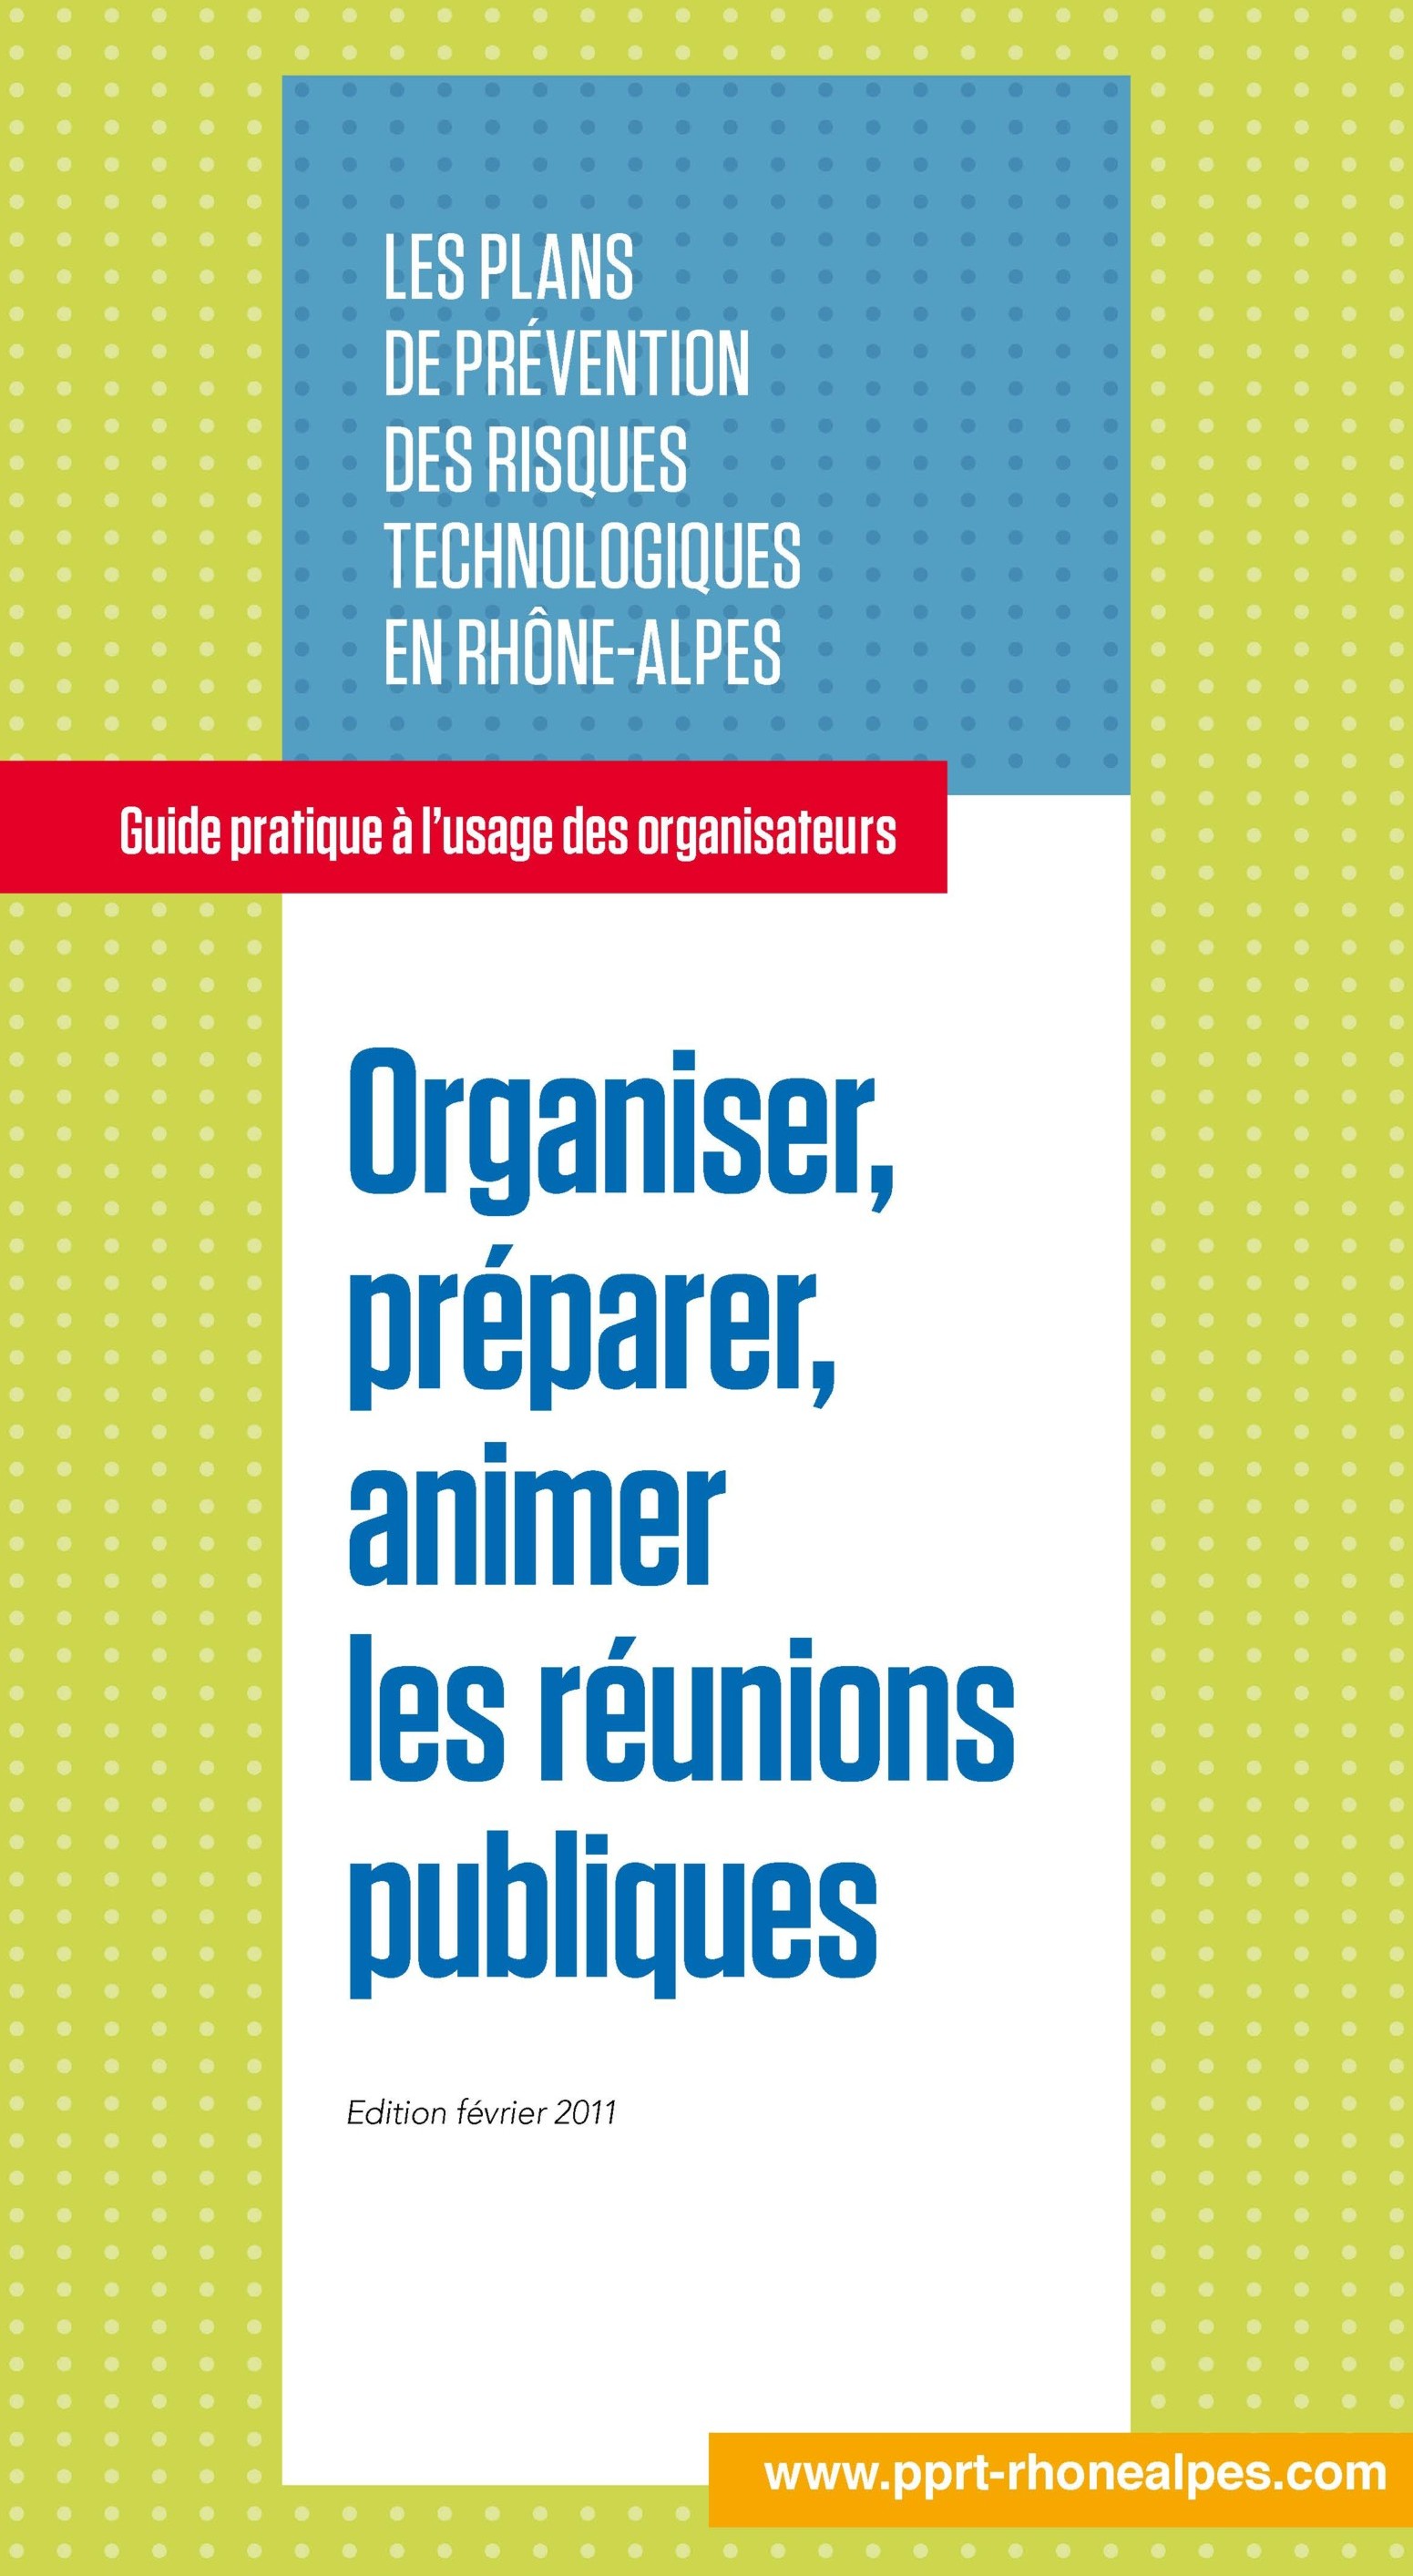 Les Plans de Prévention des Risques Technologiques en Rhône-Alpes : Organiser, préparer, animer les réunions publiques